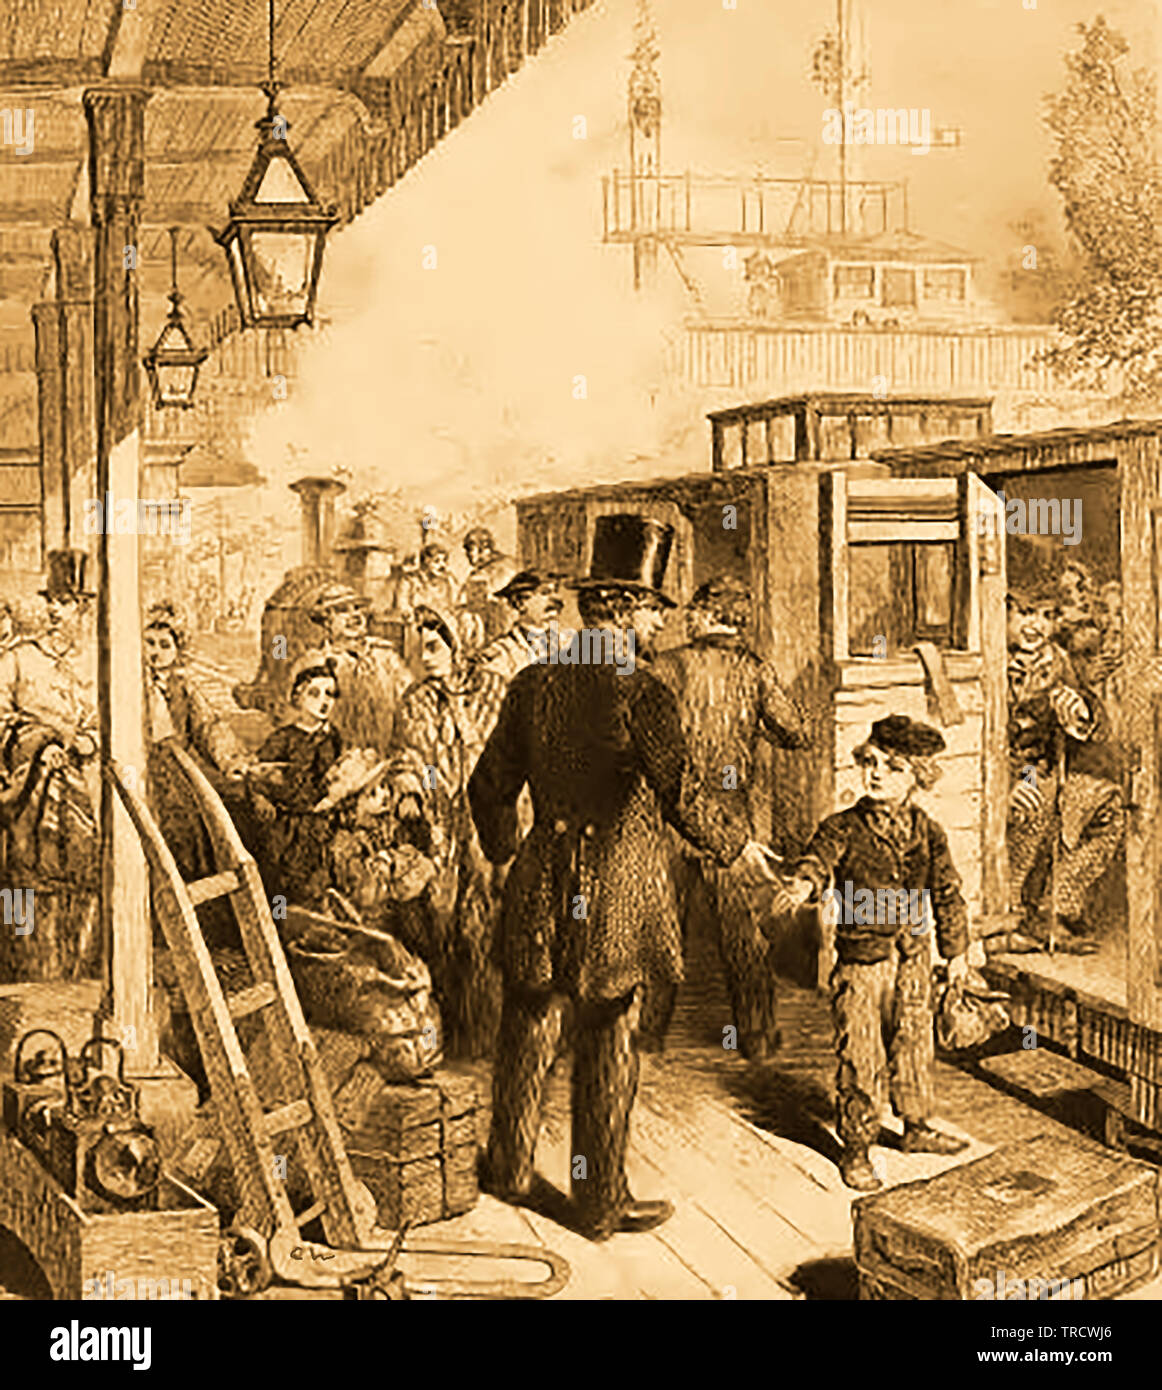 1864 - Infirmières de l'image d'une scène de la gare victorienne en Grande-Bretagne Banque D'Images